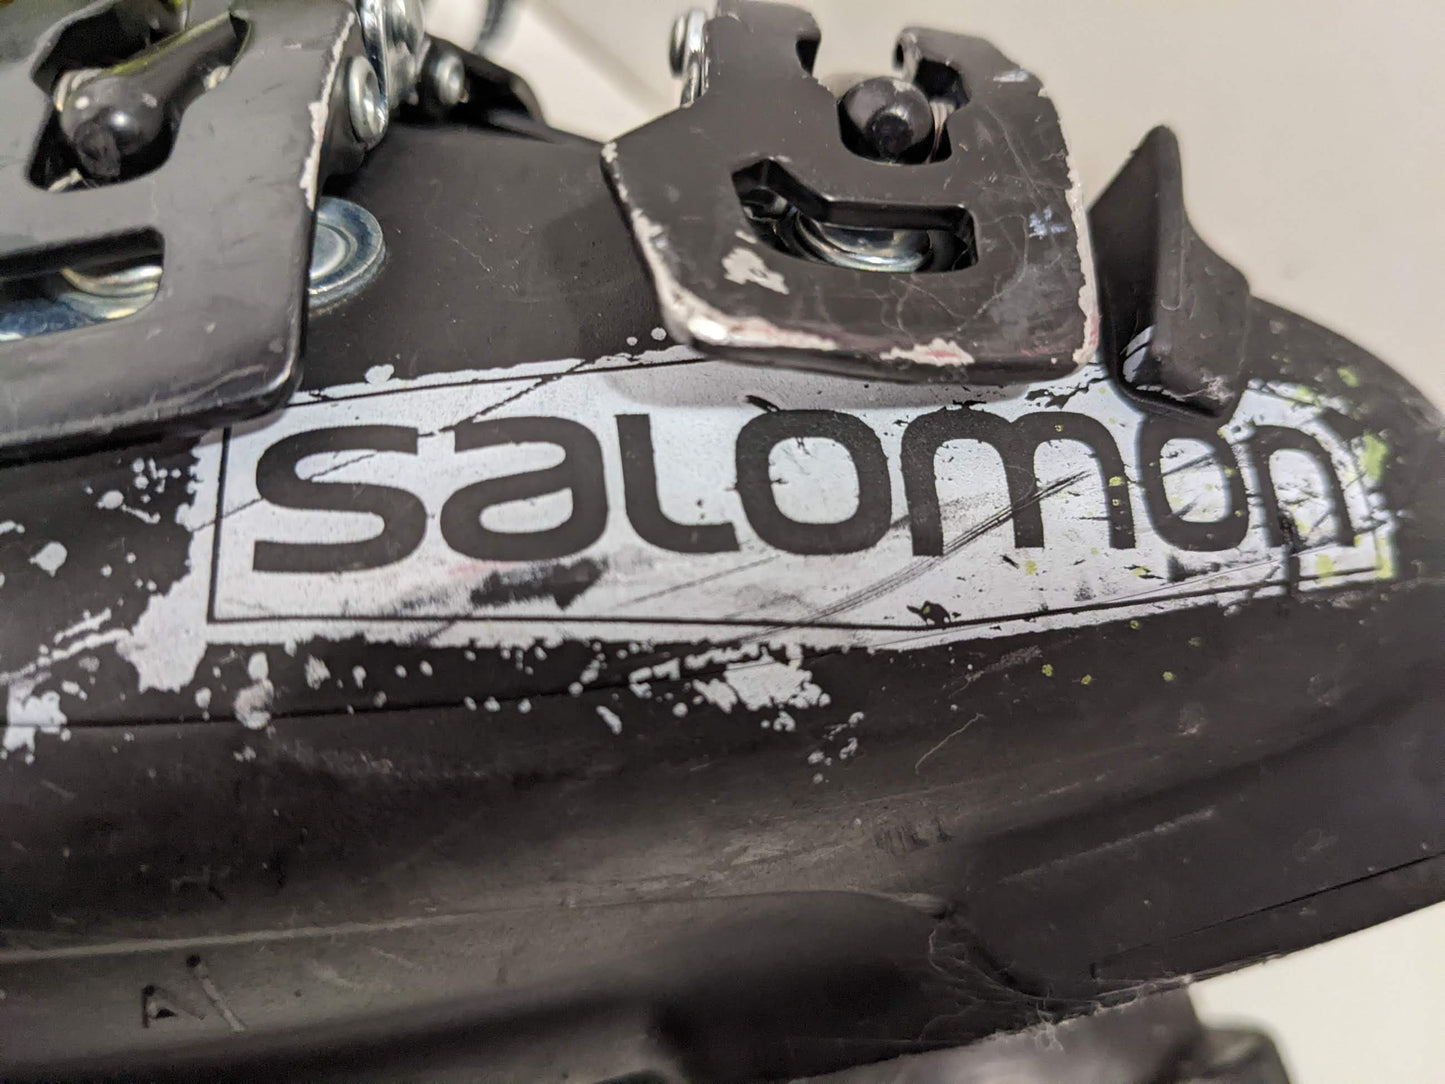 Salomon XMax LC 65 Ski Boots Size Mondo 23.5 Yellow Used